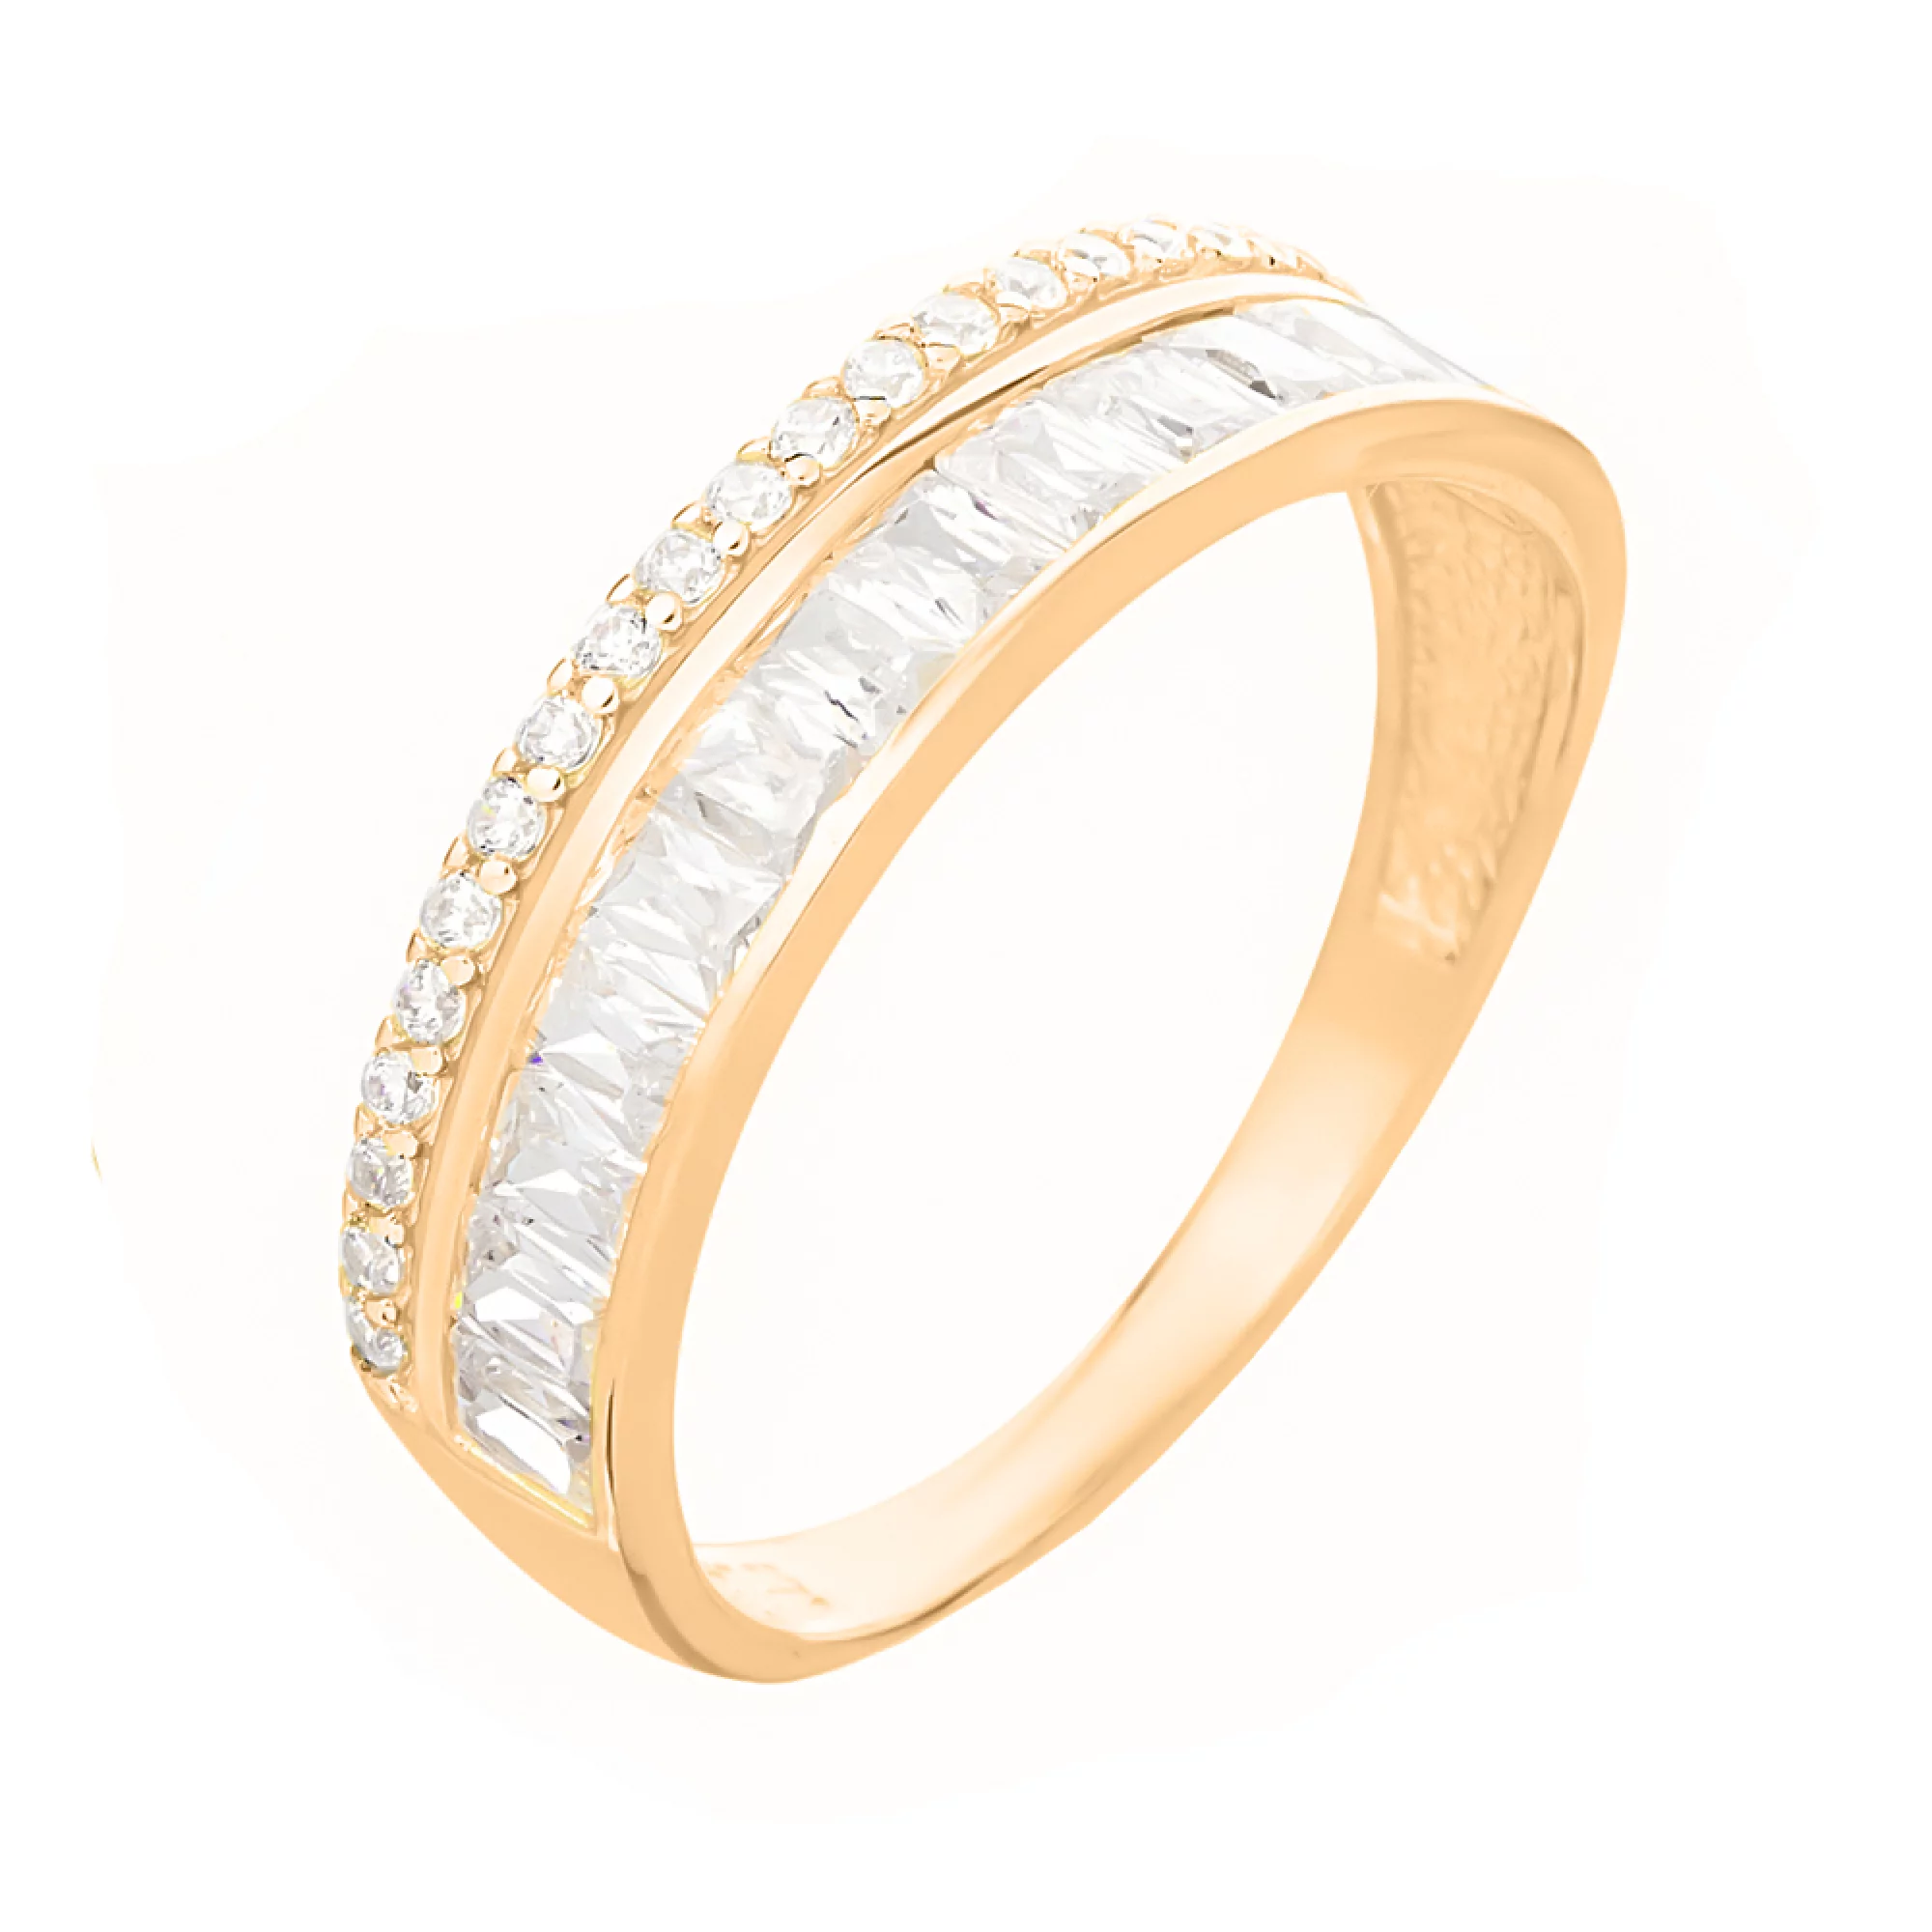 Двойное золотое кольцо с дорожкой фианитов - 1584157 – изображение 1